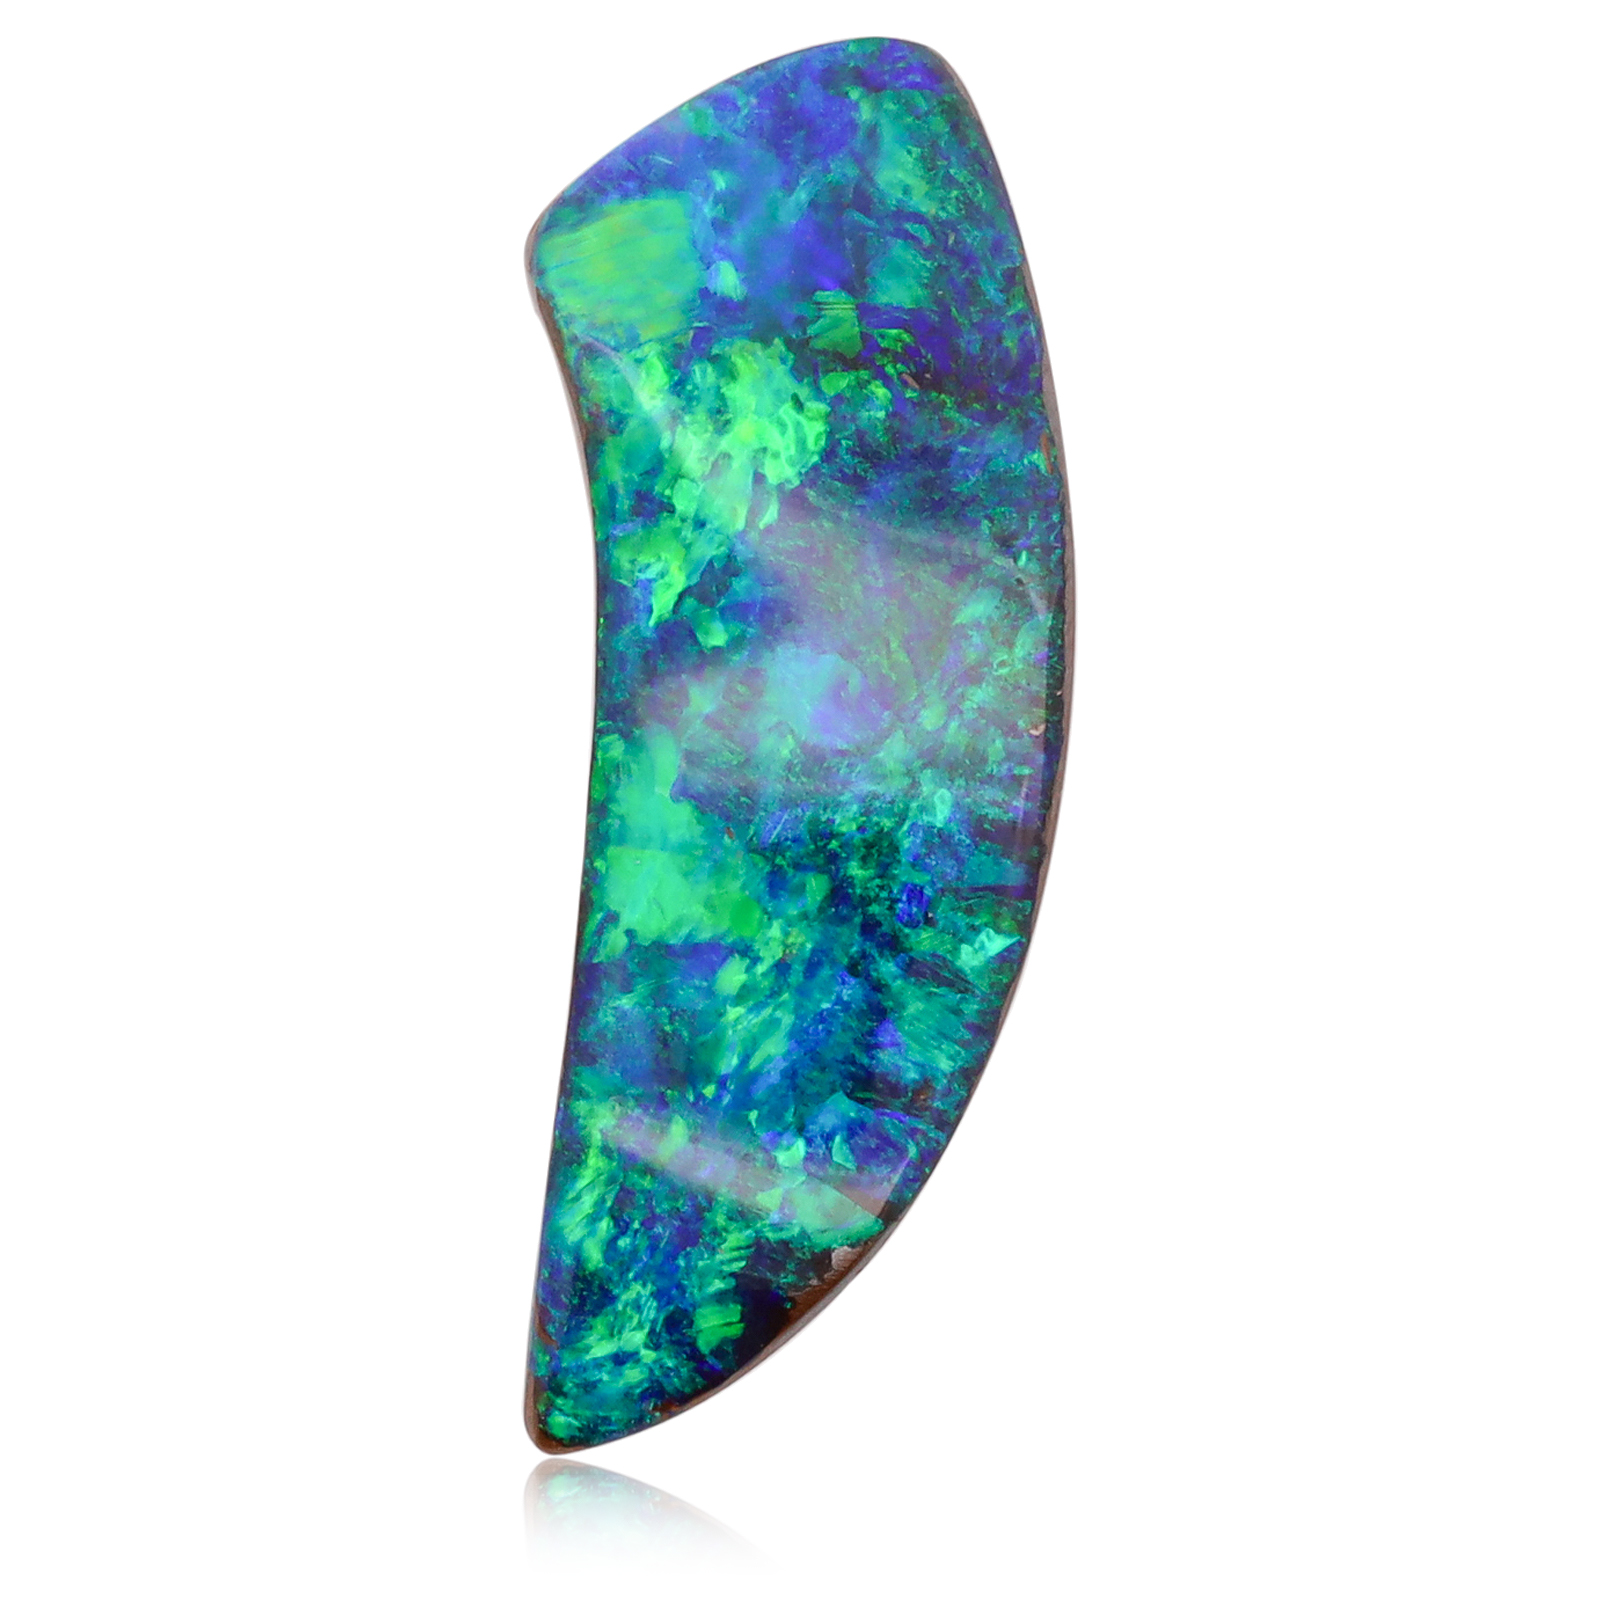 Unset Blue Green Boulder Opal